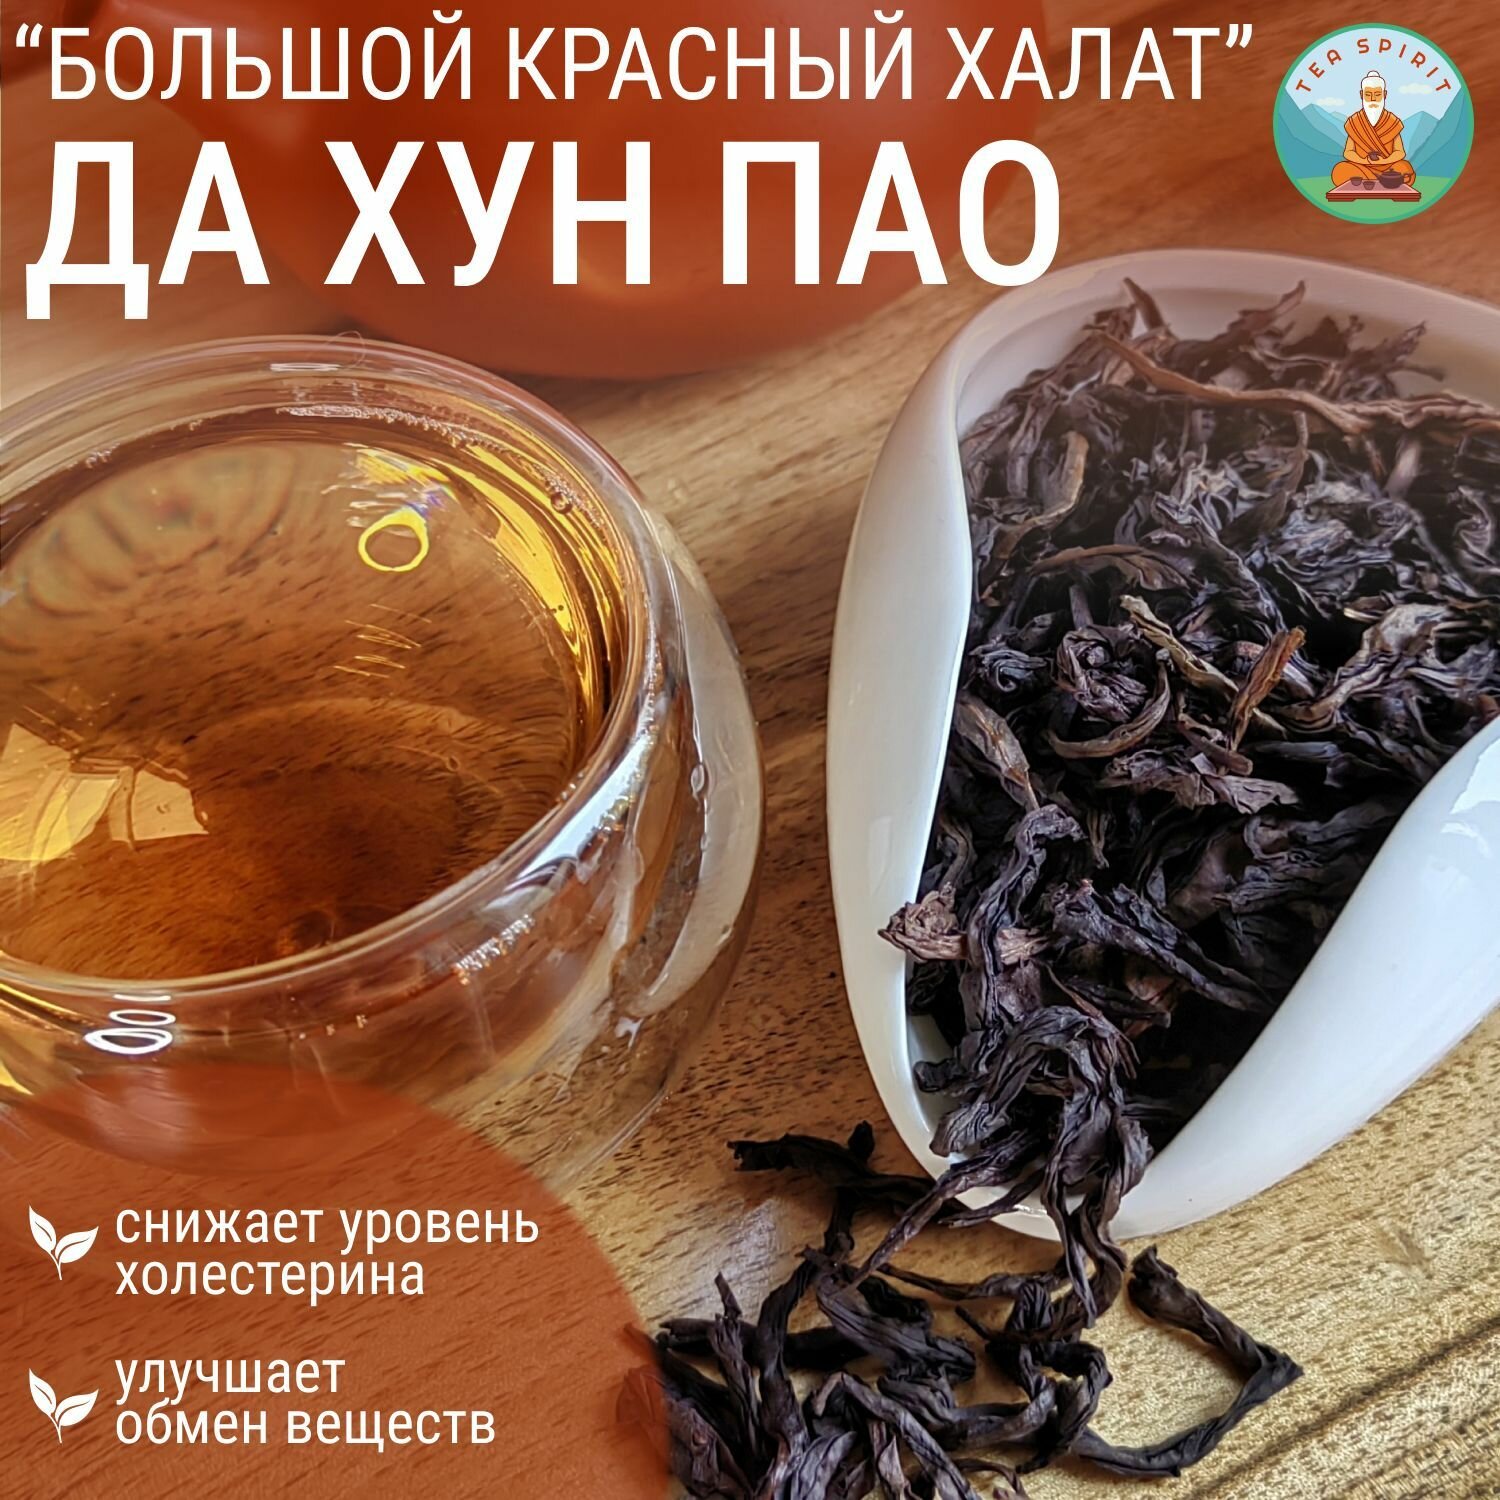 Чай Улун Да Хун Пао (Большой красный халат) кат. В / Китайский чай, чай листовой 50 г